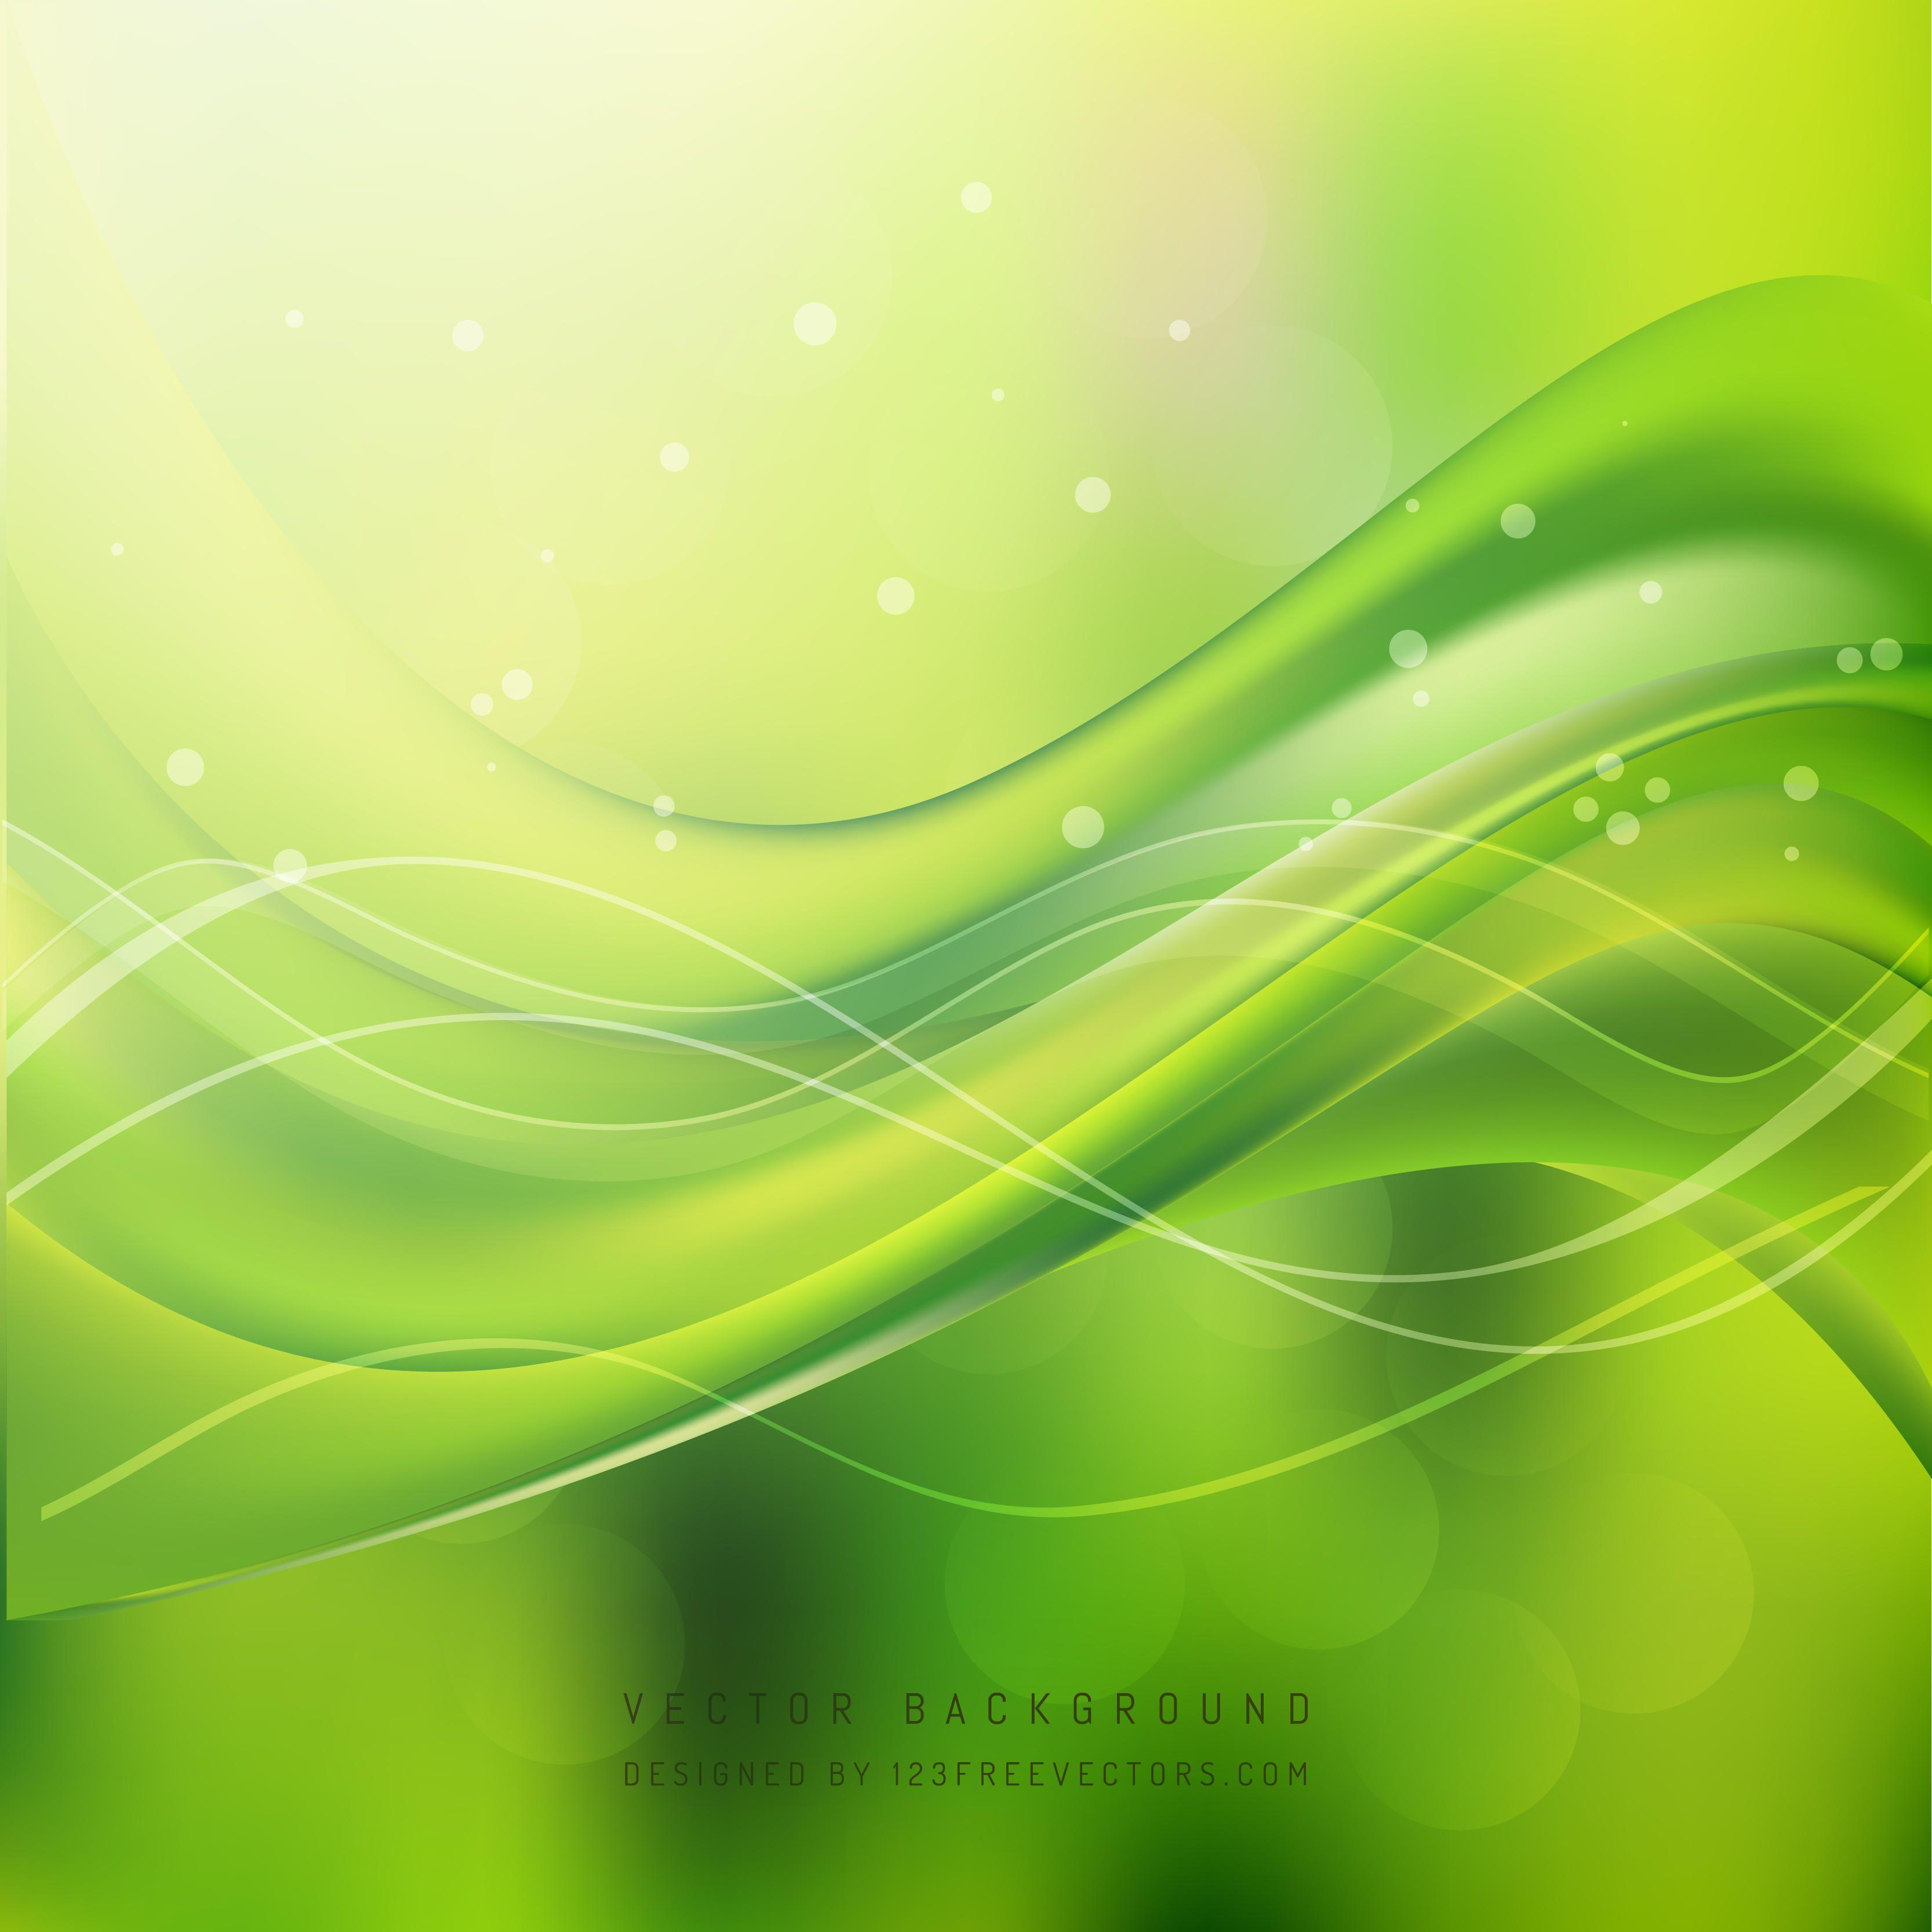 Green Background Vectors. Download Free Vector Art & Graphics